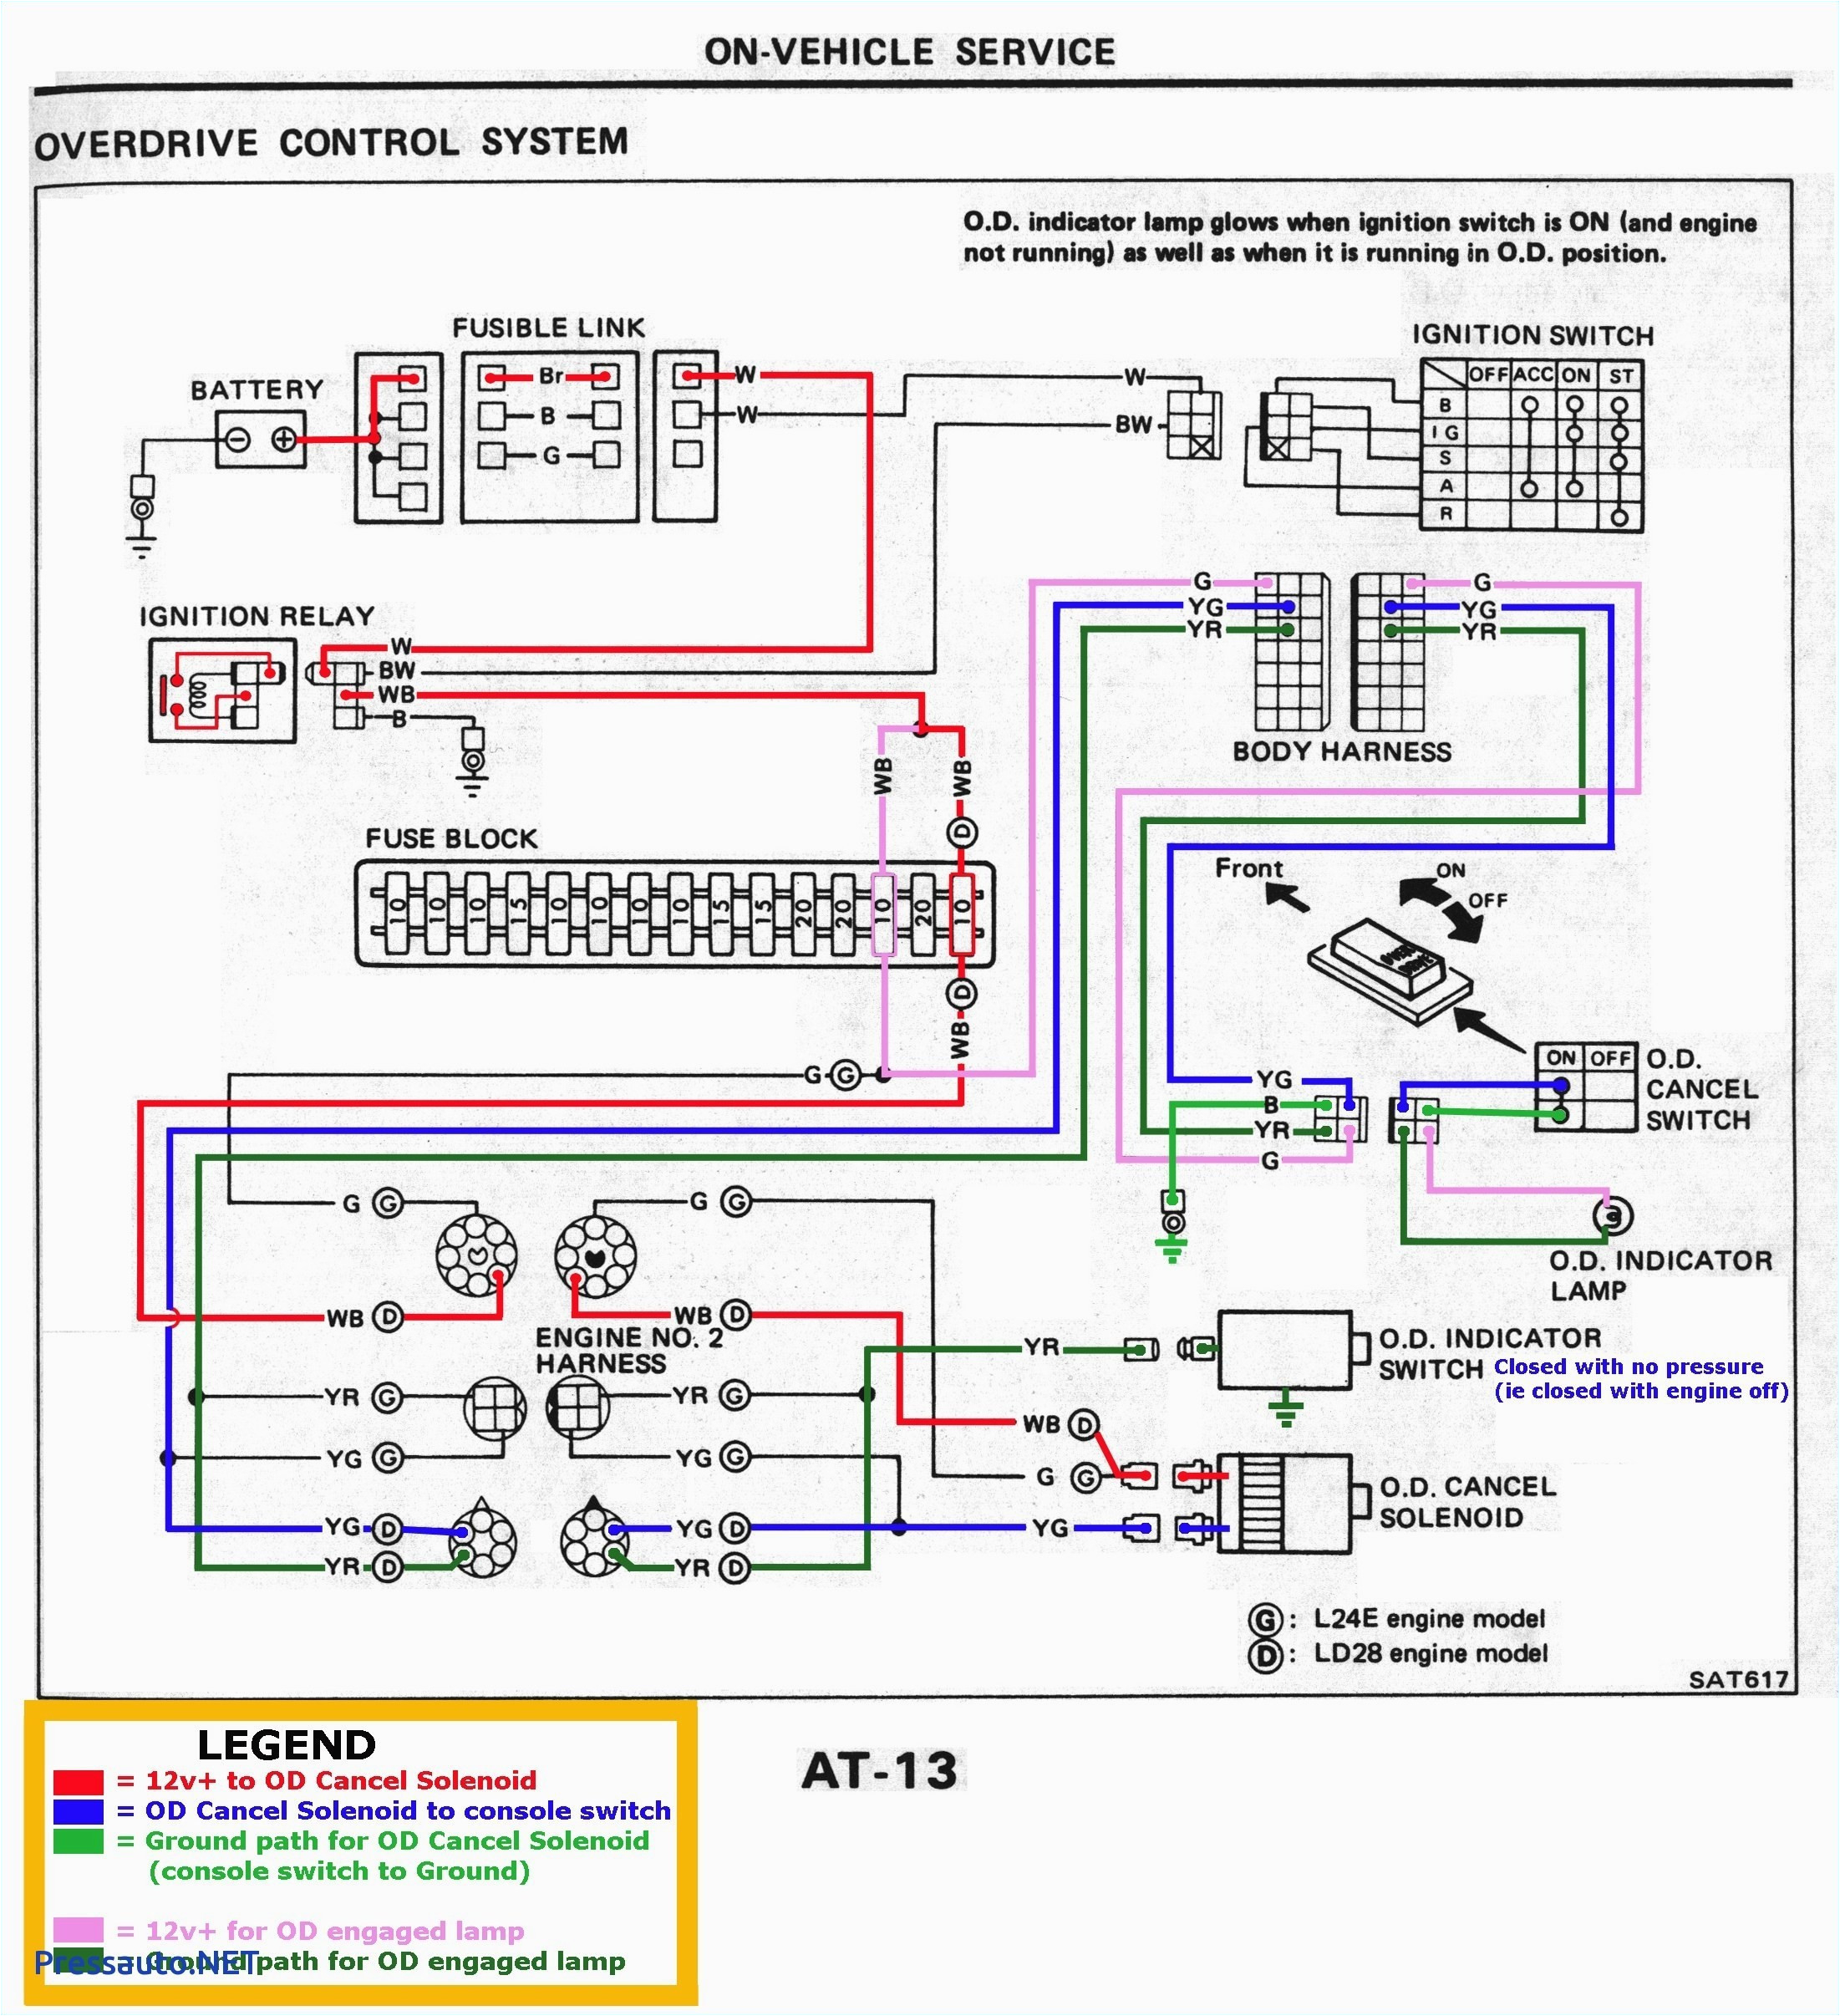 wiring electrical schematics wiring diagram used electrical wiring pdf in tamil electrical wiring pdf